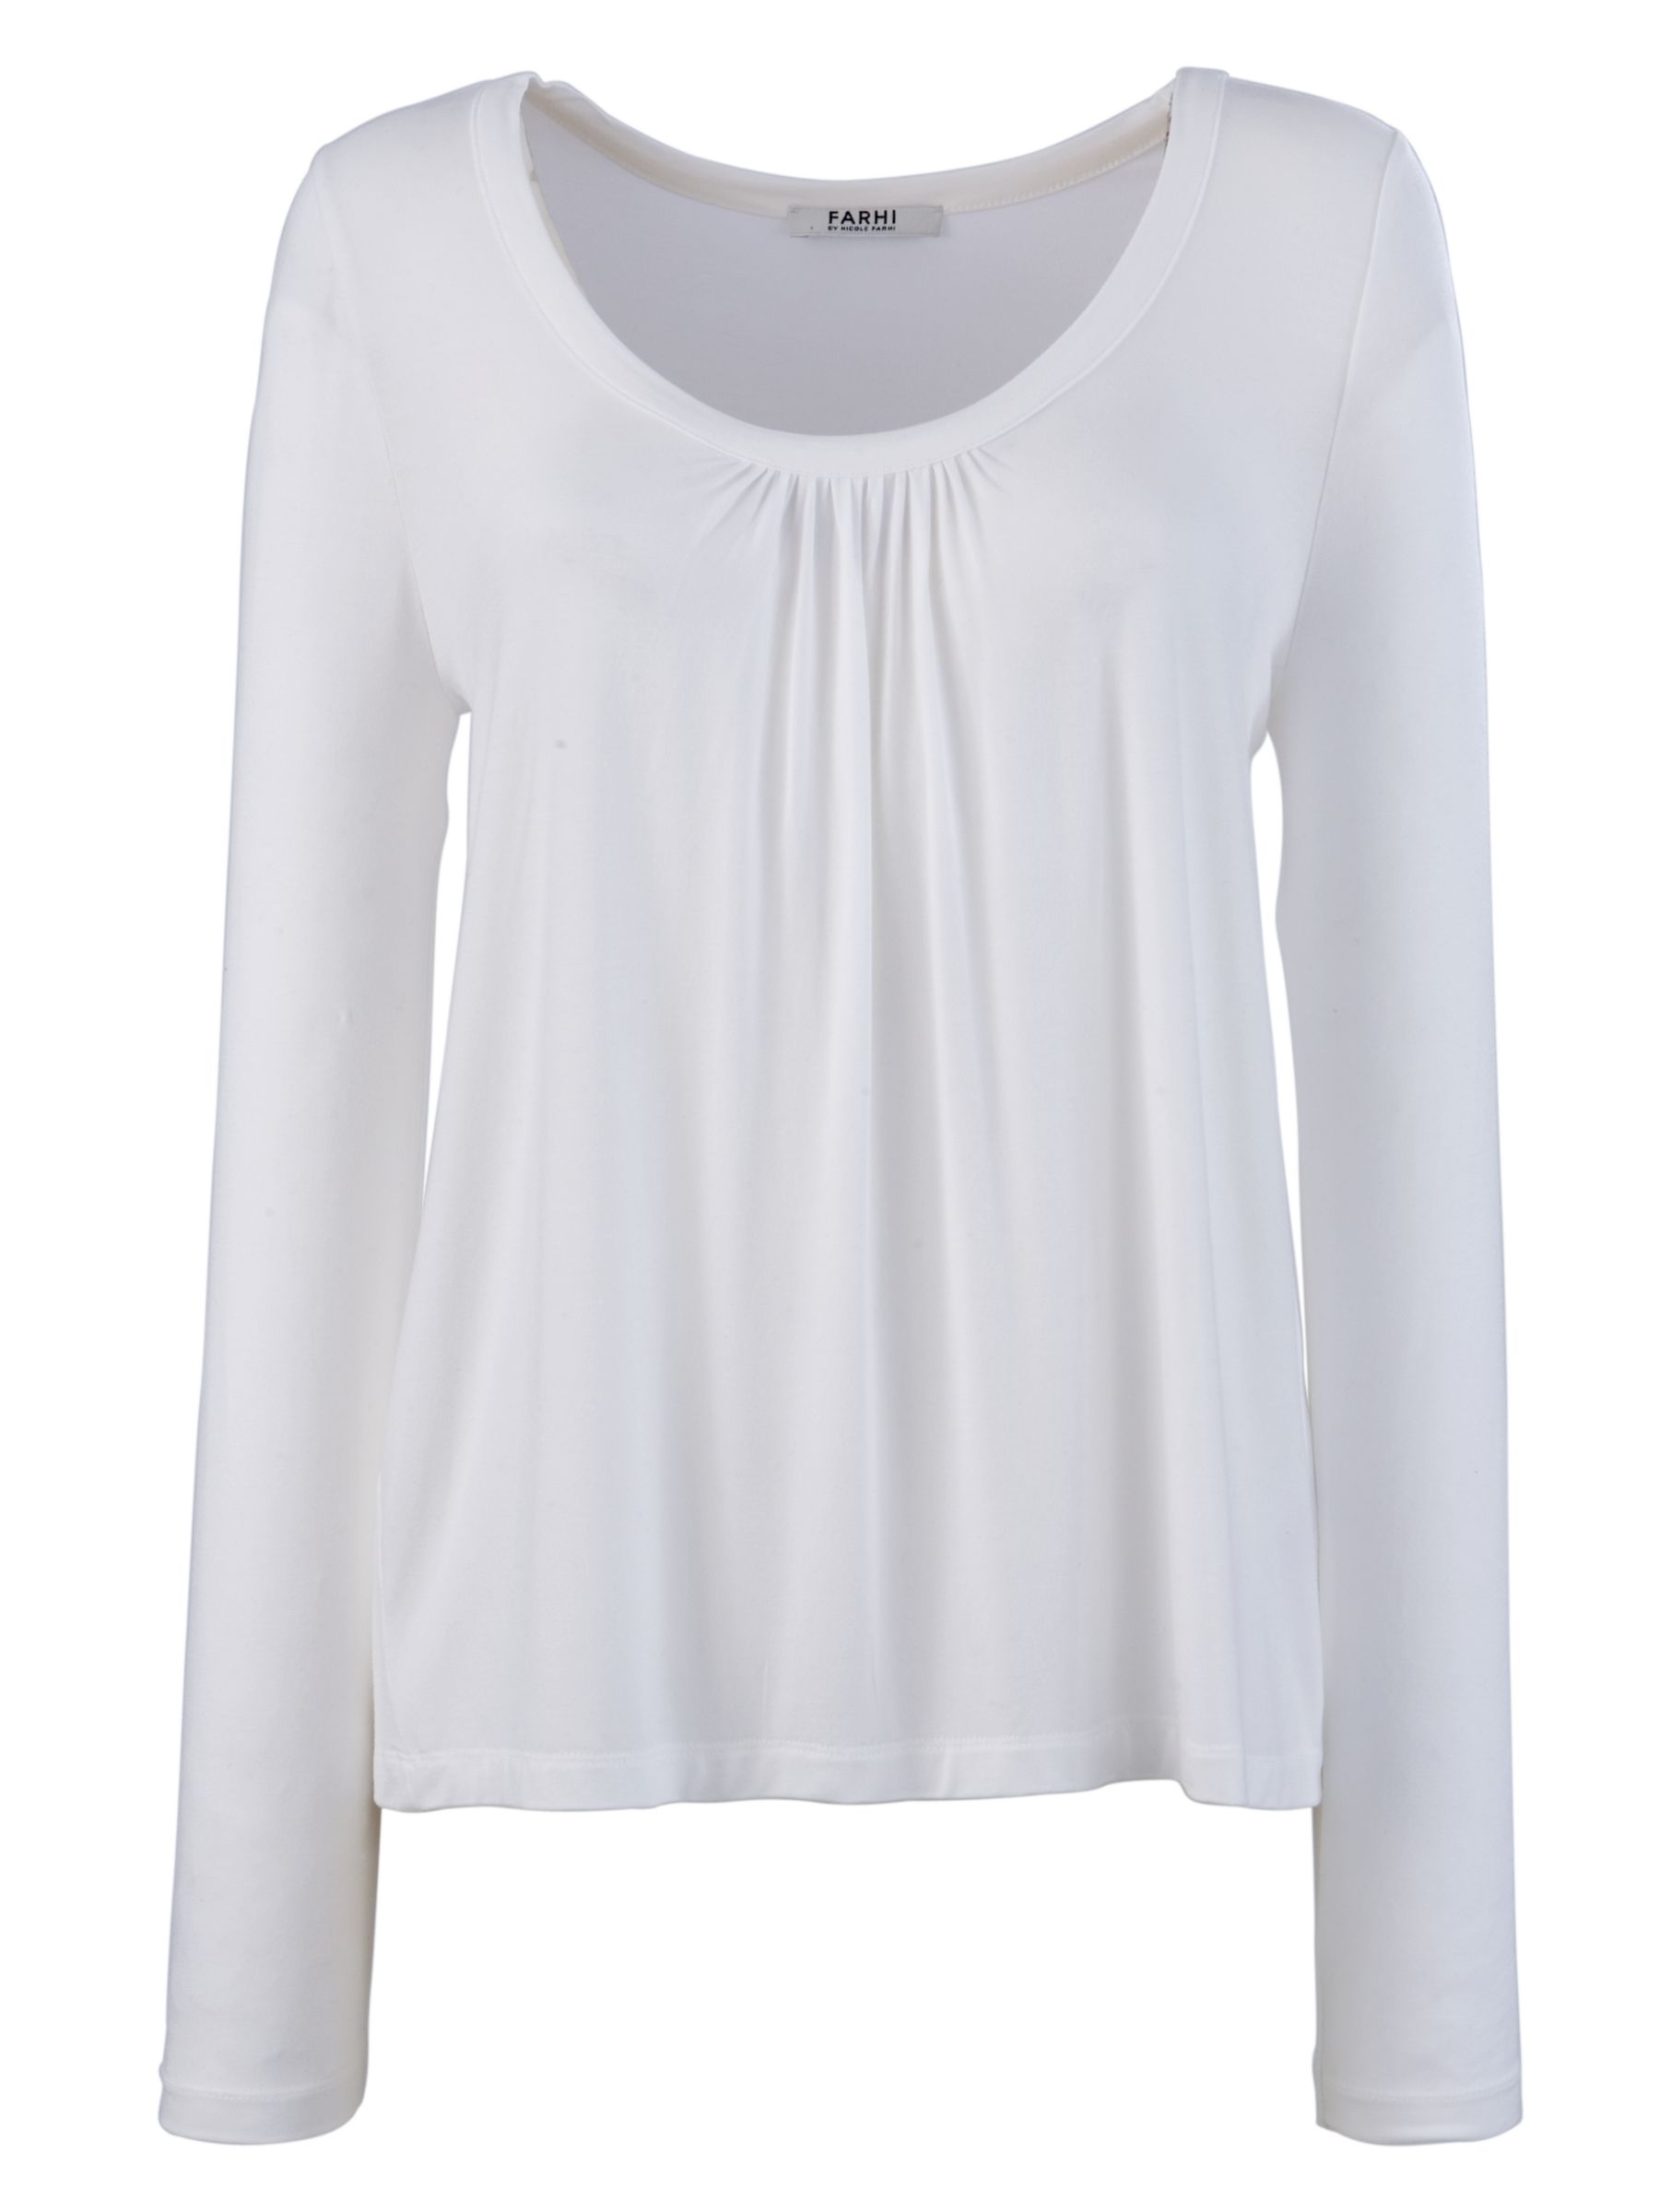 Farhi Scoop Neck Long Sleeve White T-Shirt, White